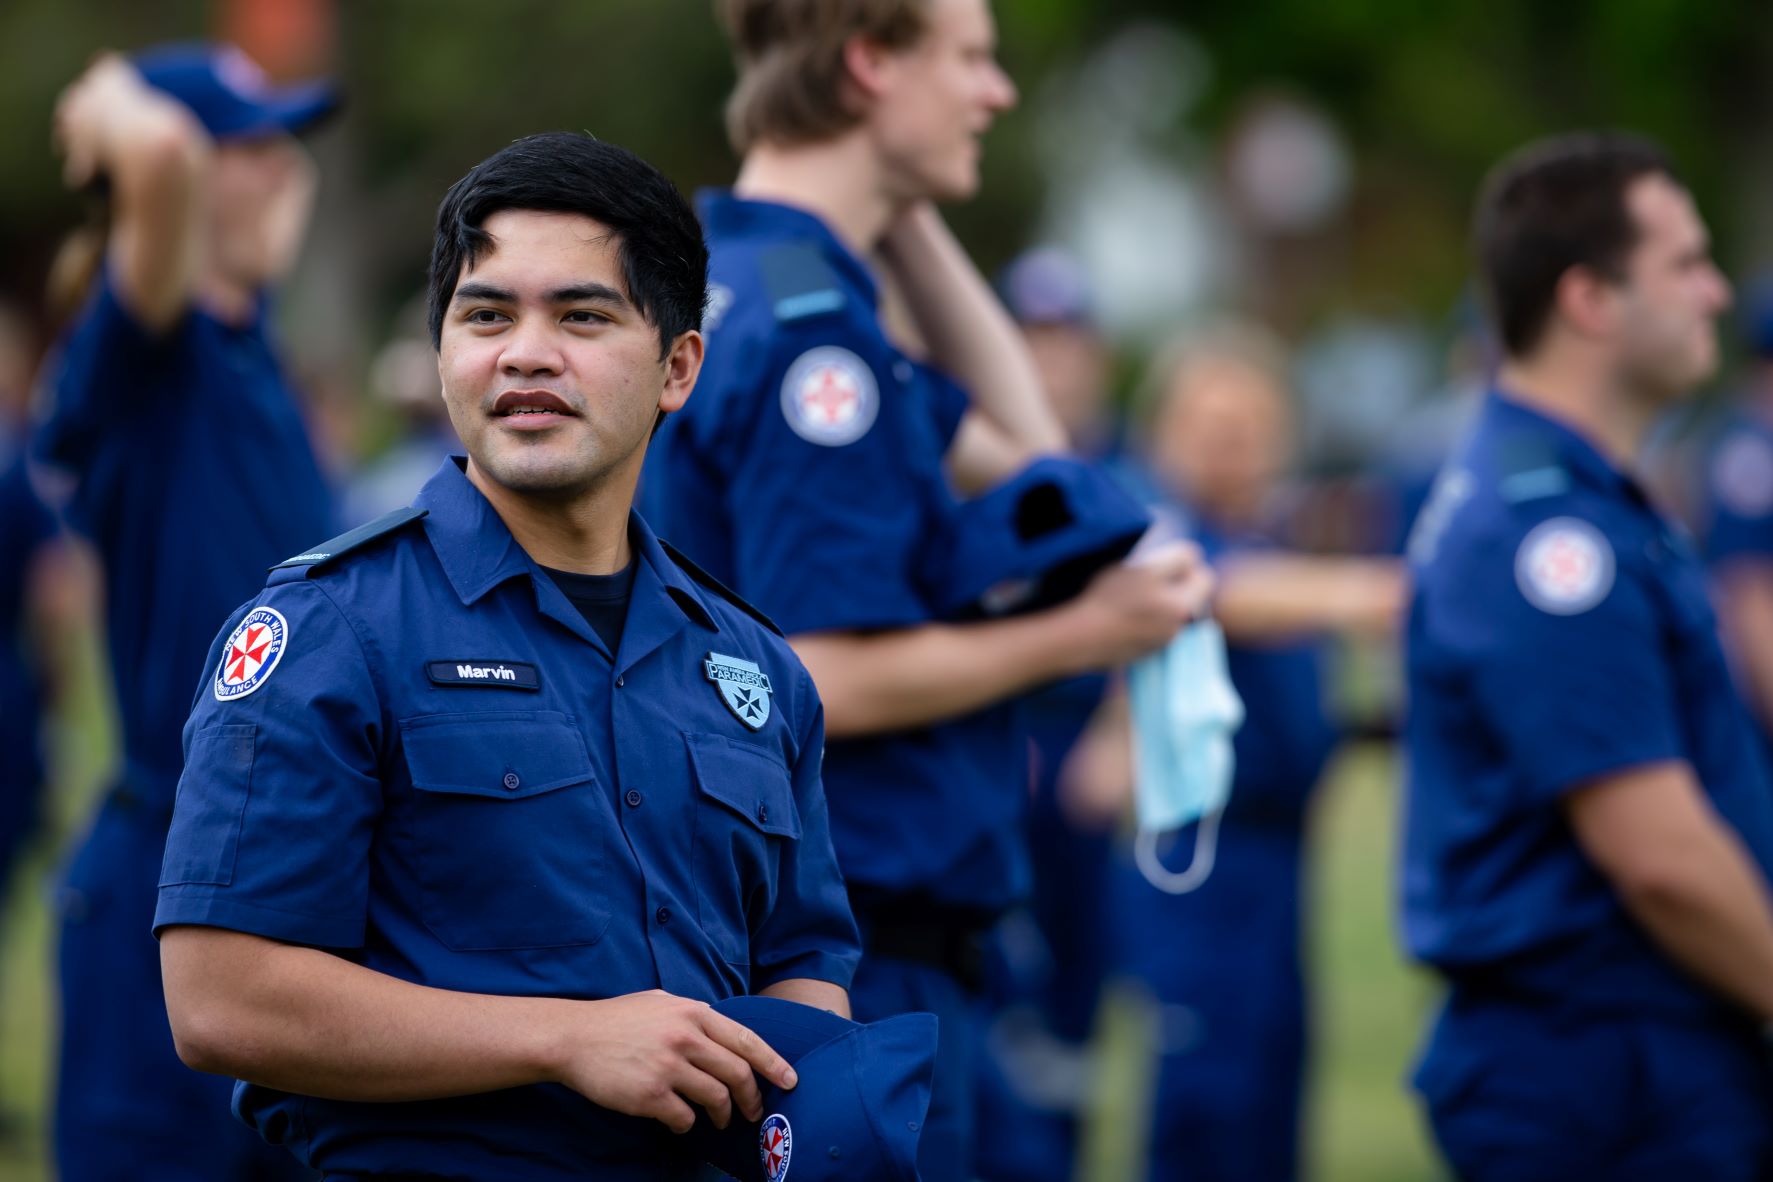 Paramedic Surge Graduation at Homebush